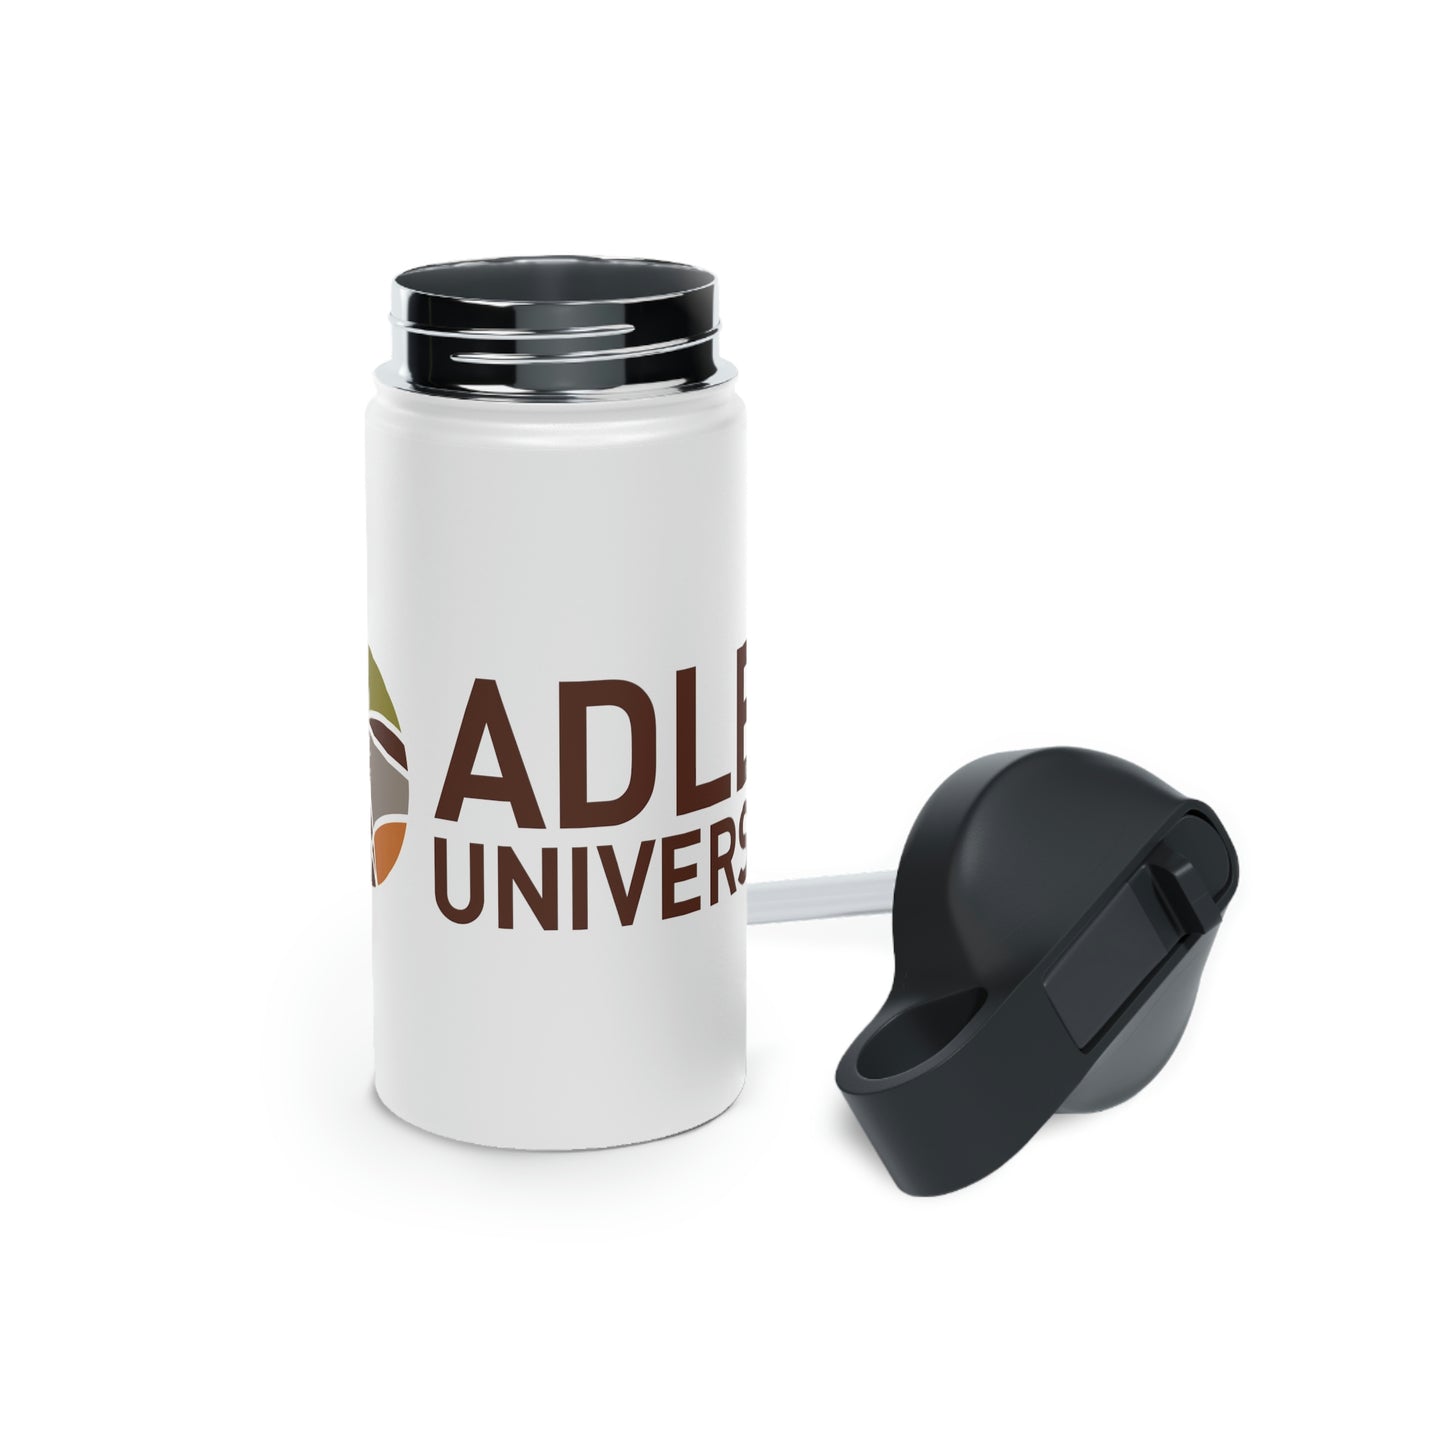 Adler University Logo Stainless Steel Water Bottle, Standard Lid